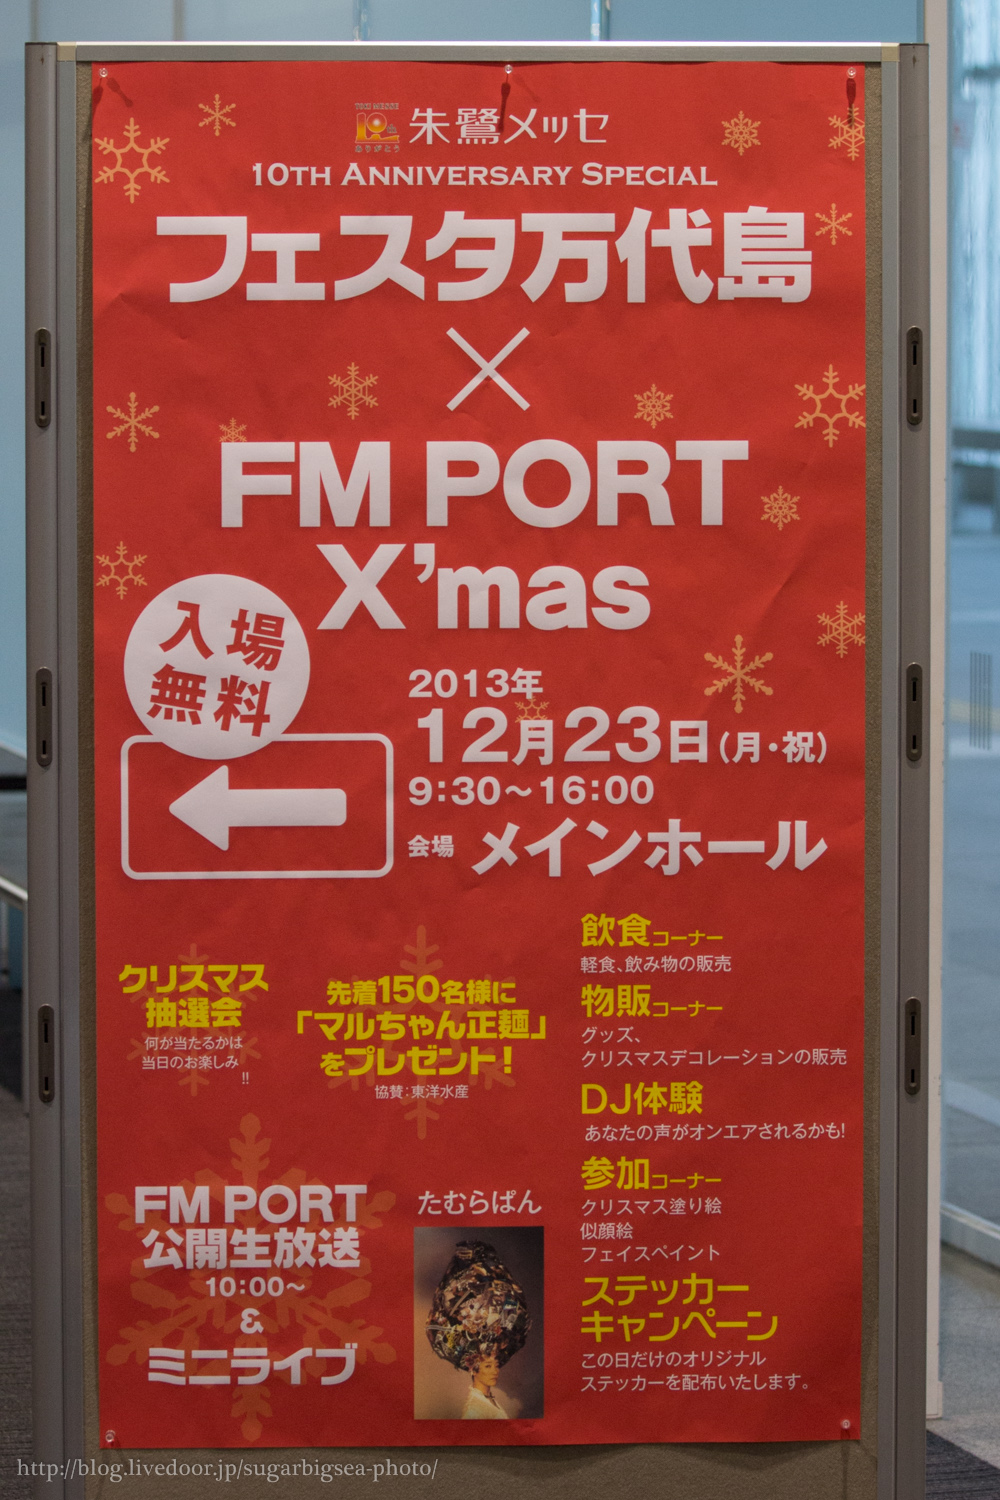 Fm Port Christmas With フェスタ万代島 井の中のお写真 仮